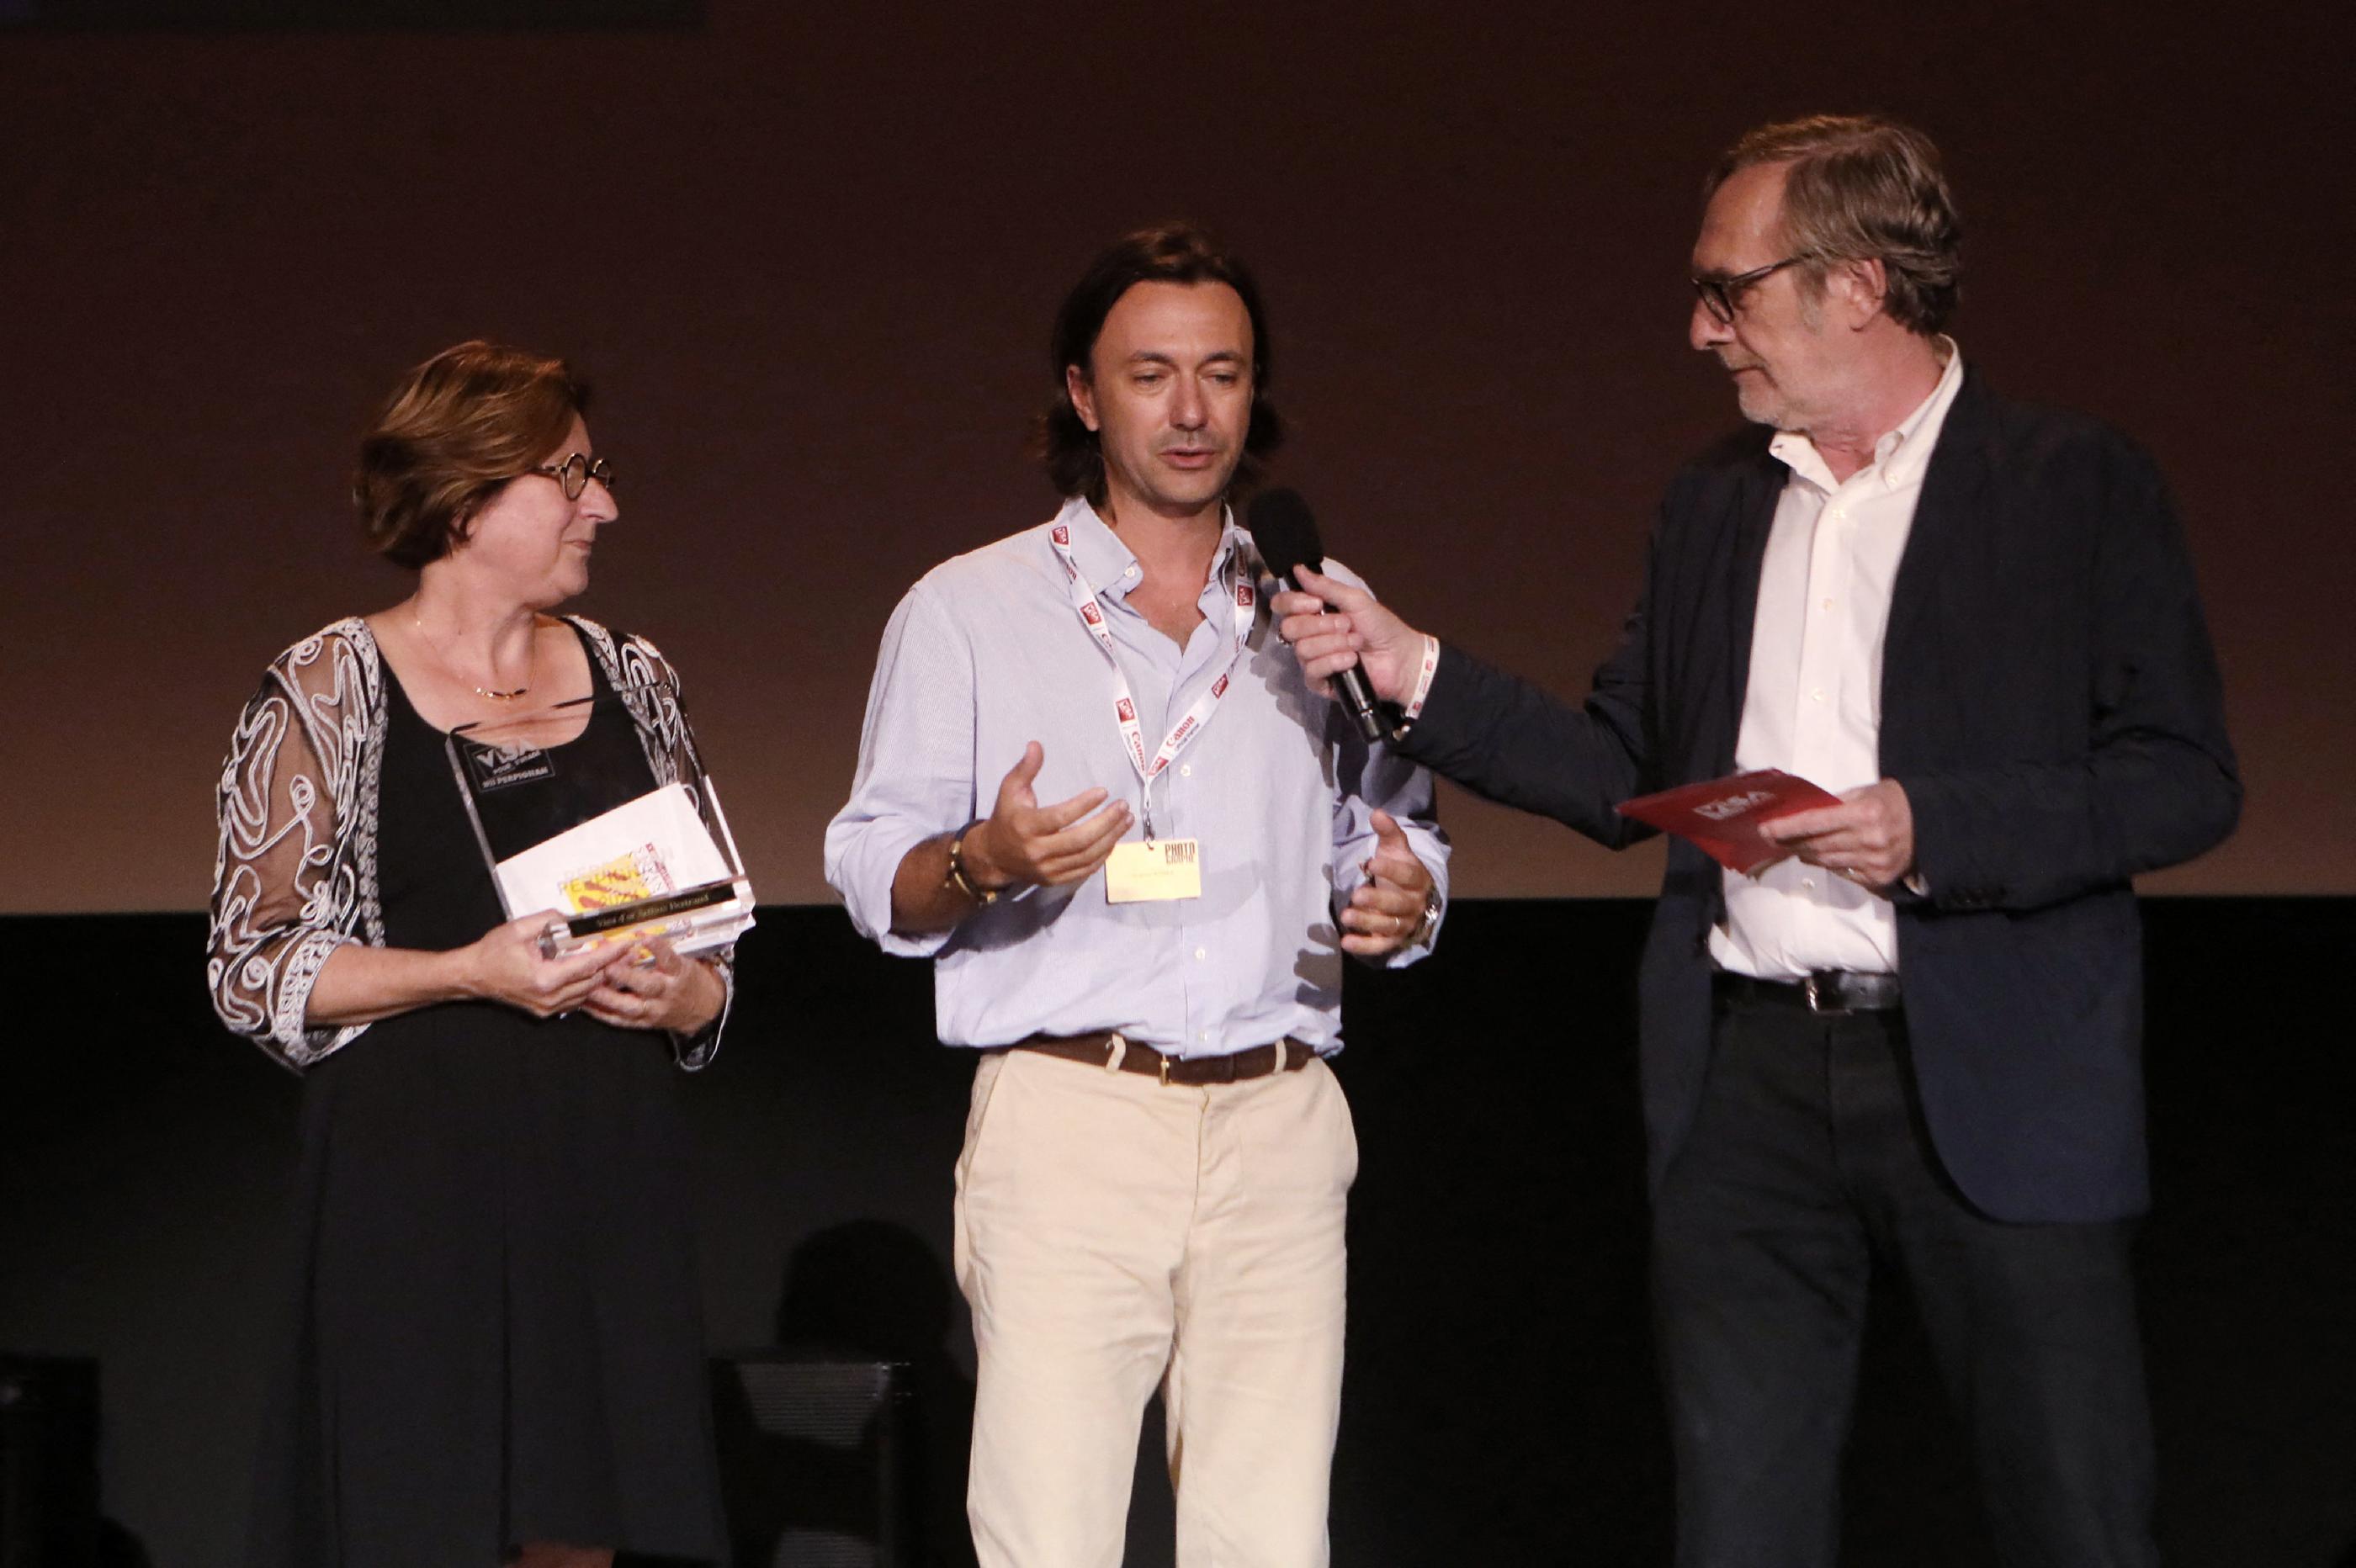 Le photojournaliste italo-britannique Siegfried Modola (au centre) reçoit un Visa d'Or aux côtés d'Hermeline Malherbe, présidente du département des Pyrénées-Orientales et de Jean-François Leroy (à droite), le fondateur de Visa pour l'Image. AFP/ Raymond Roig